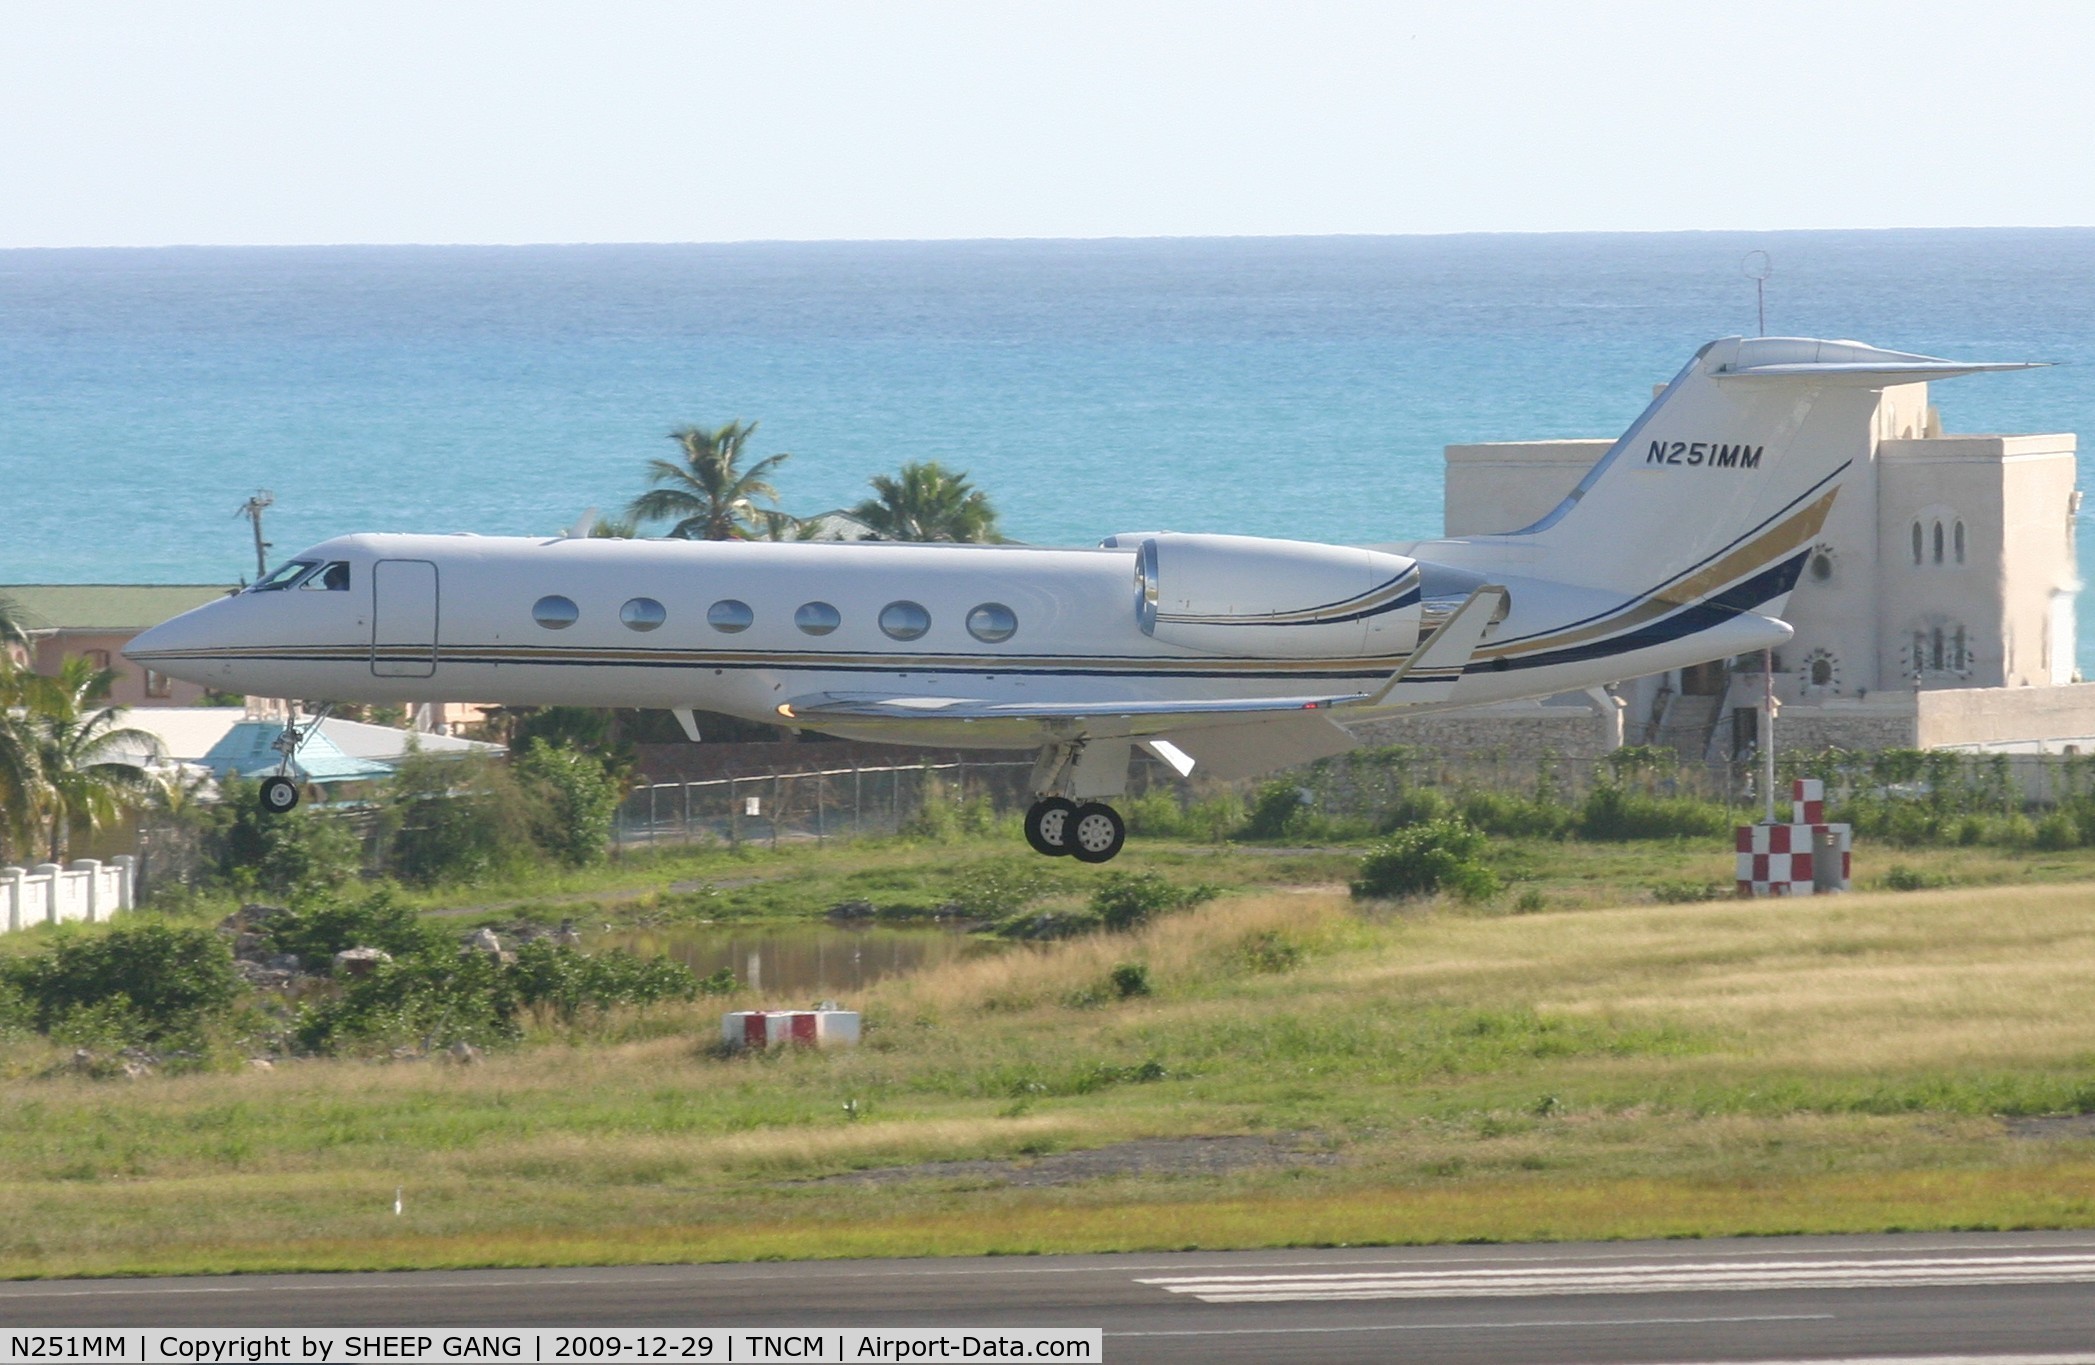 N251MM, 2002 Gulfstream Aerospace G-IV SP C/N 1495, N251MM landing at TNCM